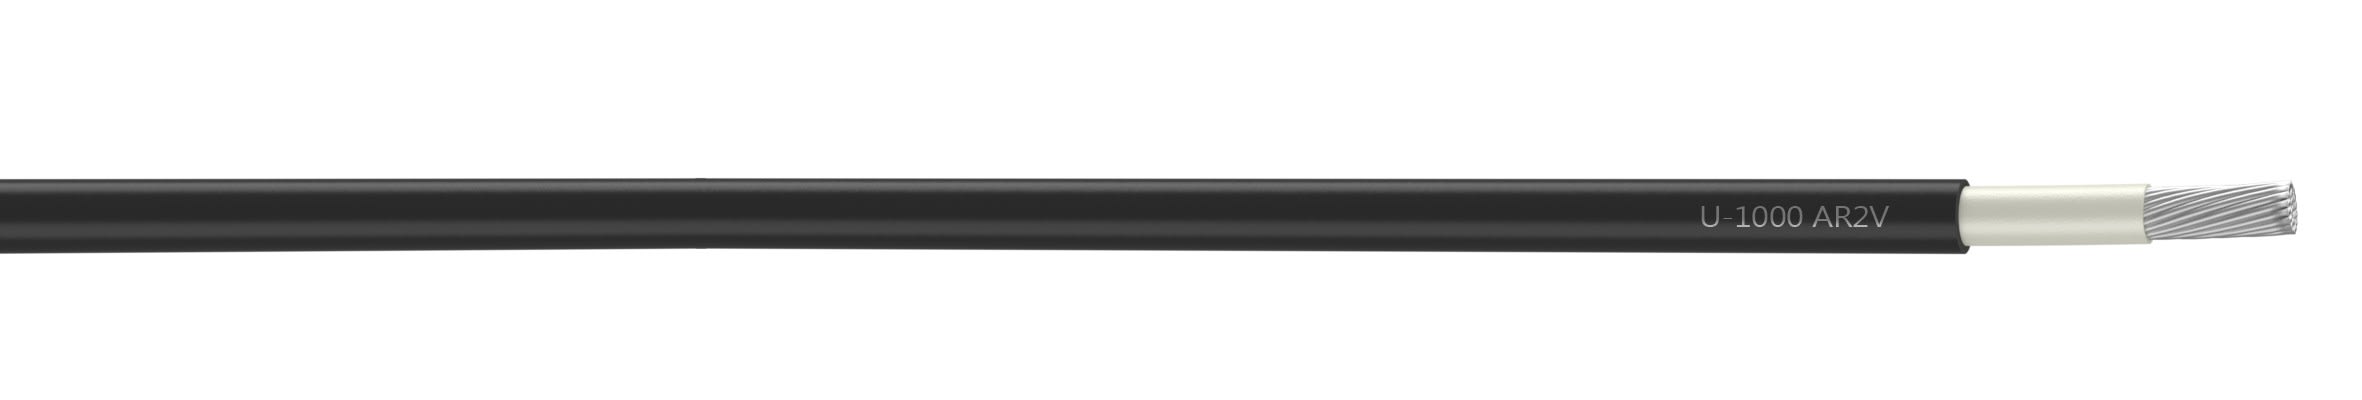 Nexans - Câble rigide U-1000 AR2V aluminium 1x400 longueur à la coupe